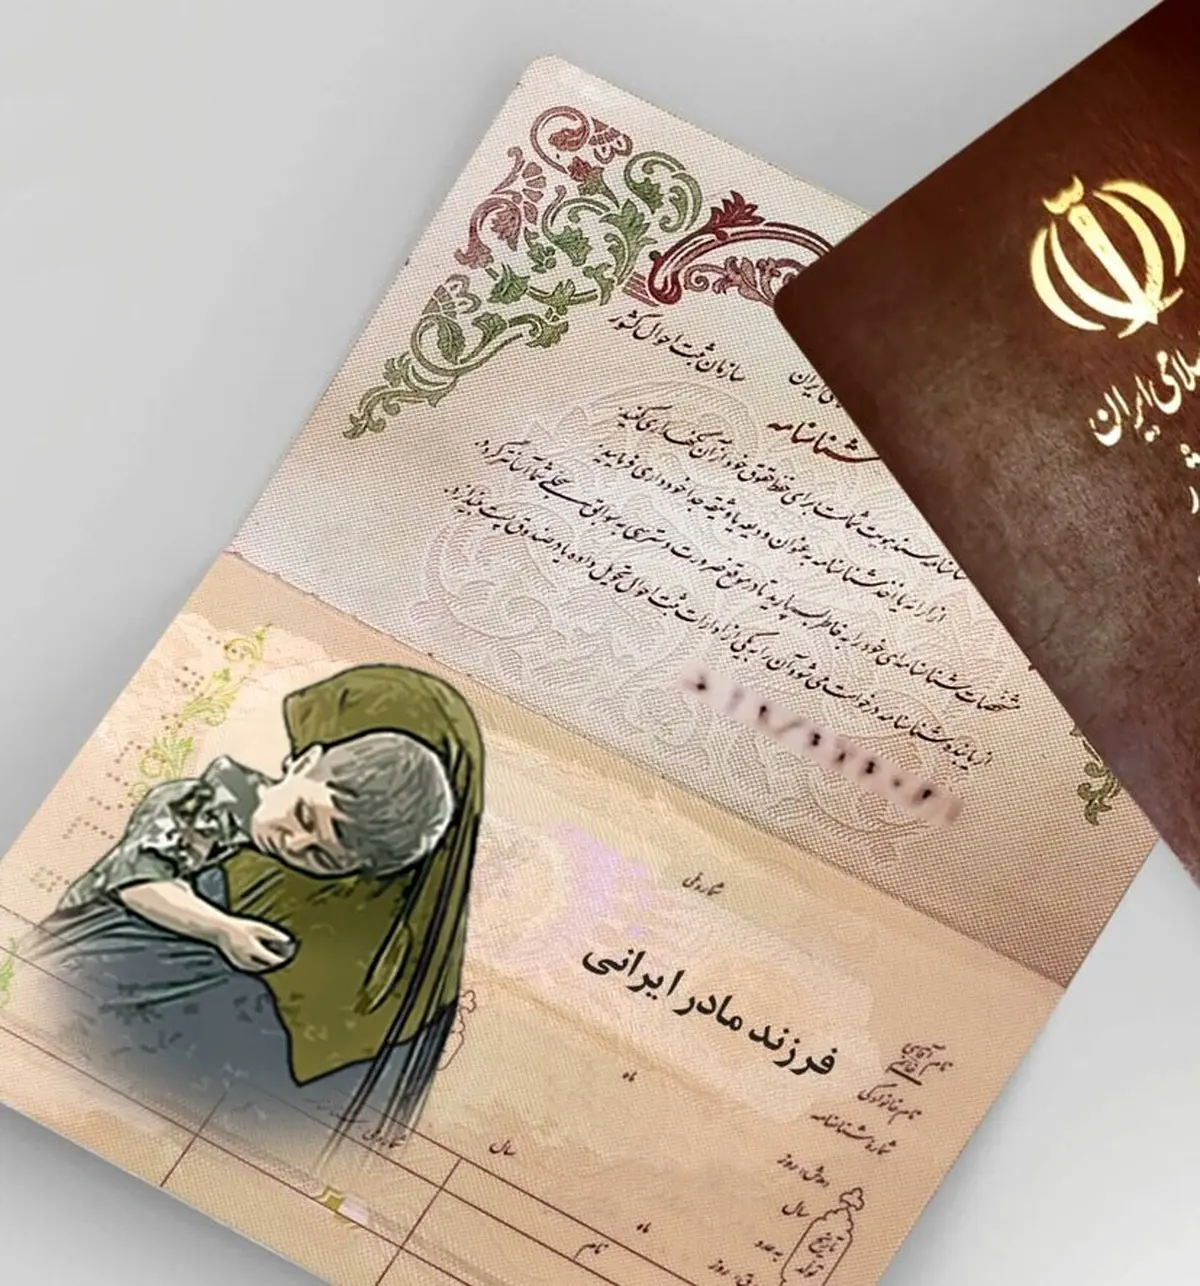 دستور رسیدگی به وضعیت صدور شناسنامه فرزندان دارای مادر ایرانی